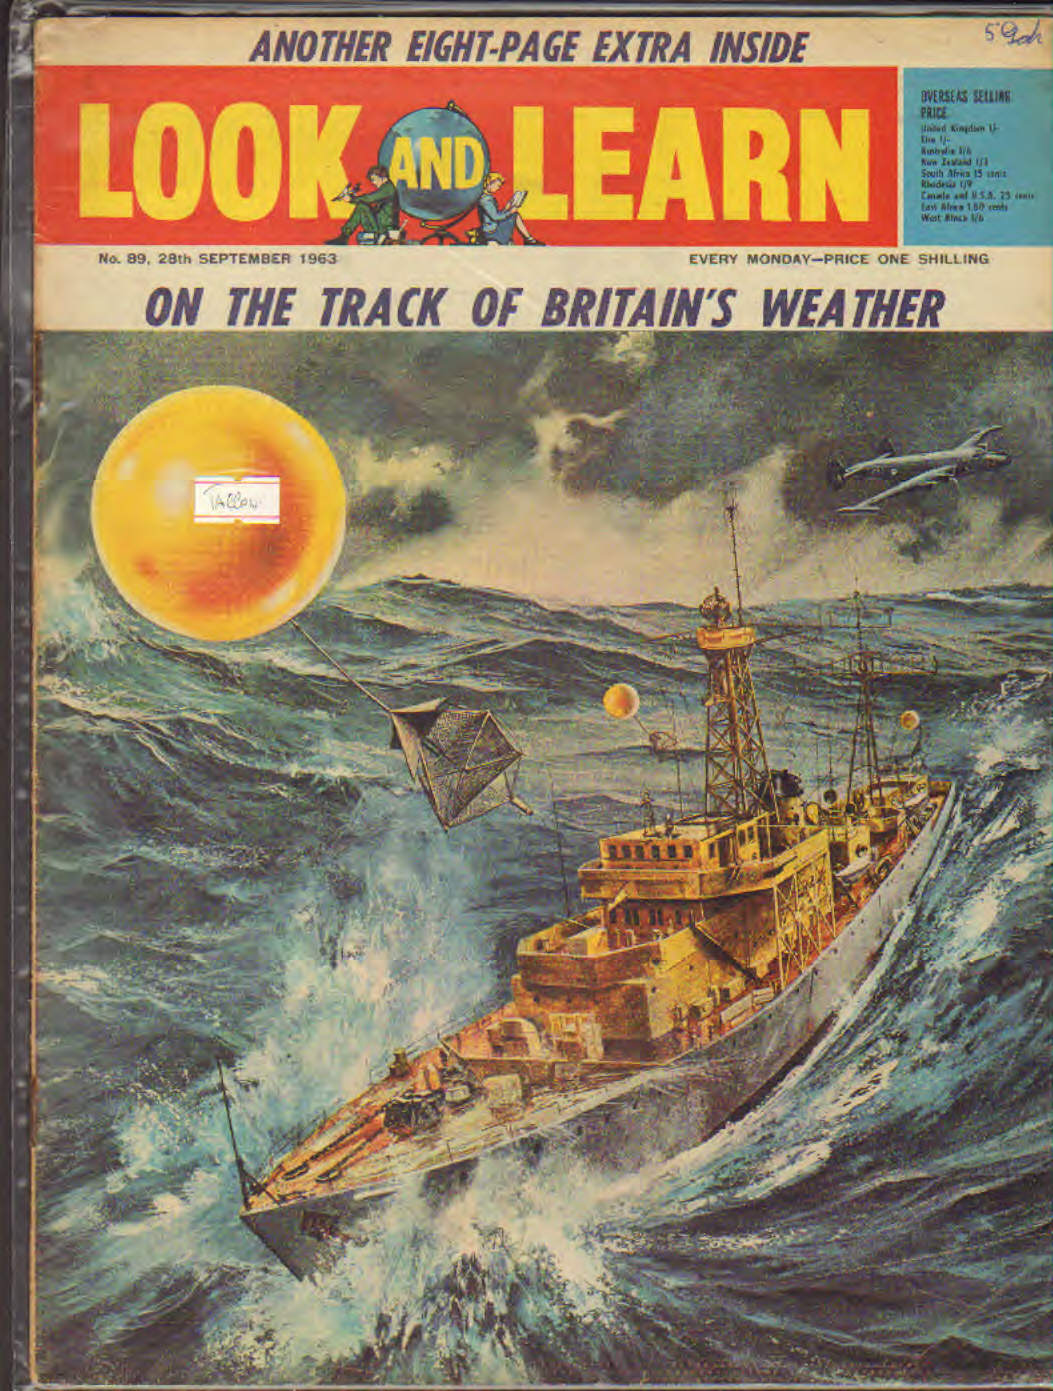 Look and Learn n. 89 contiene illustrazioni di Tacconi